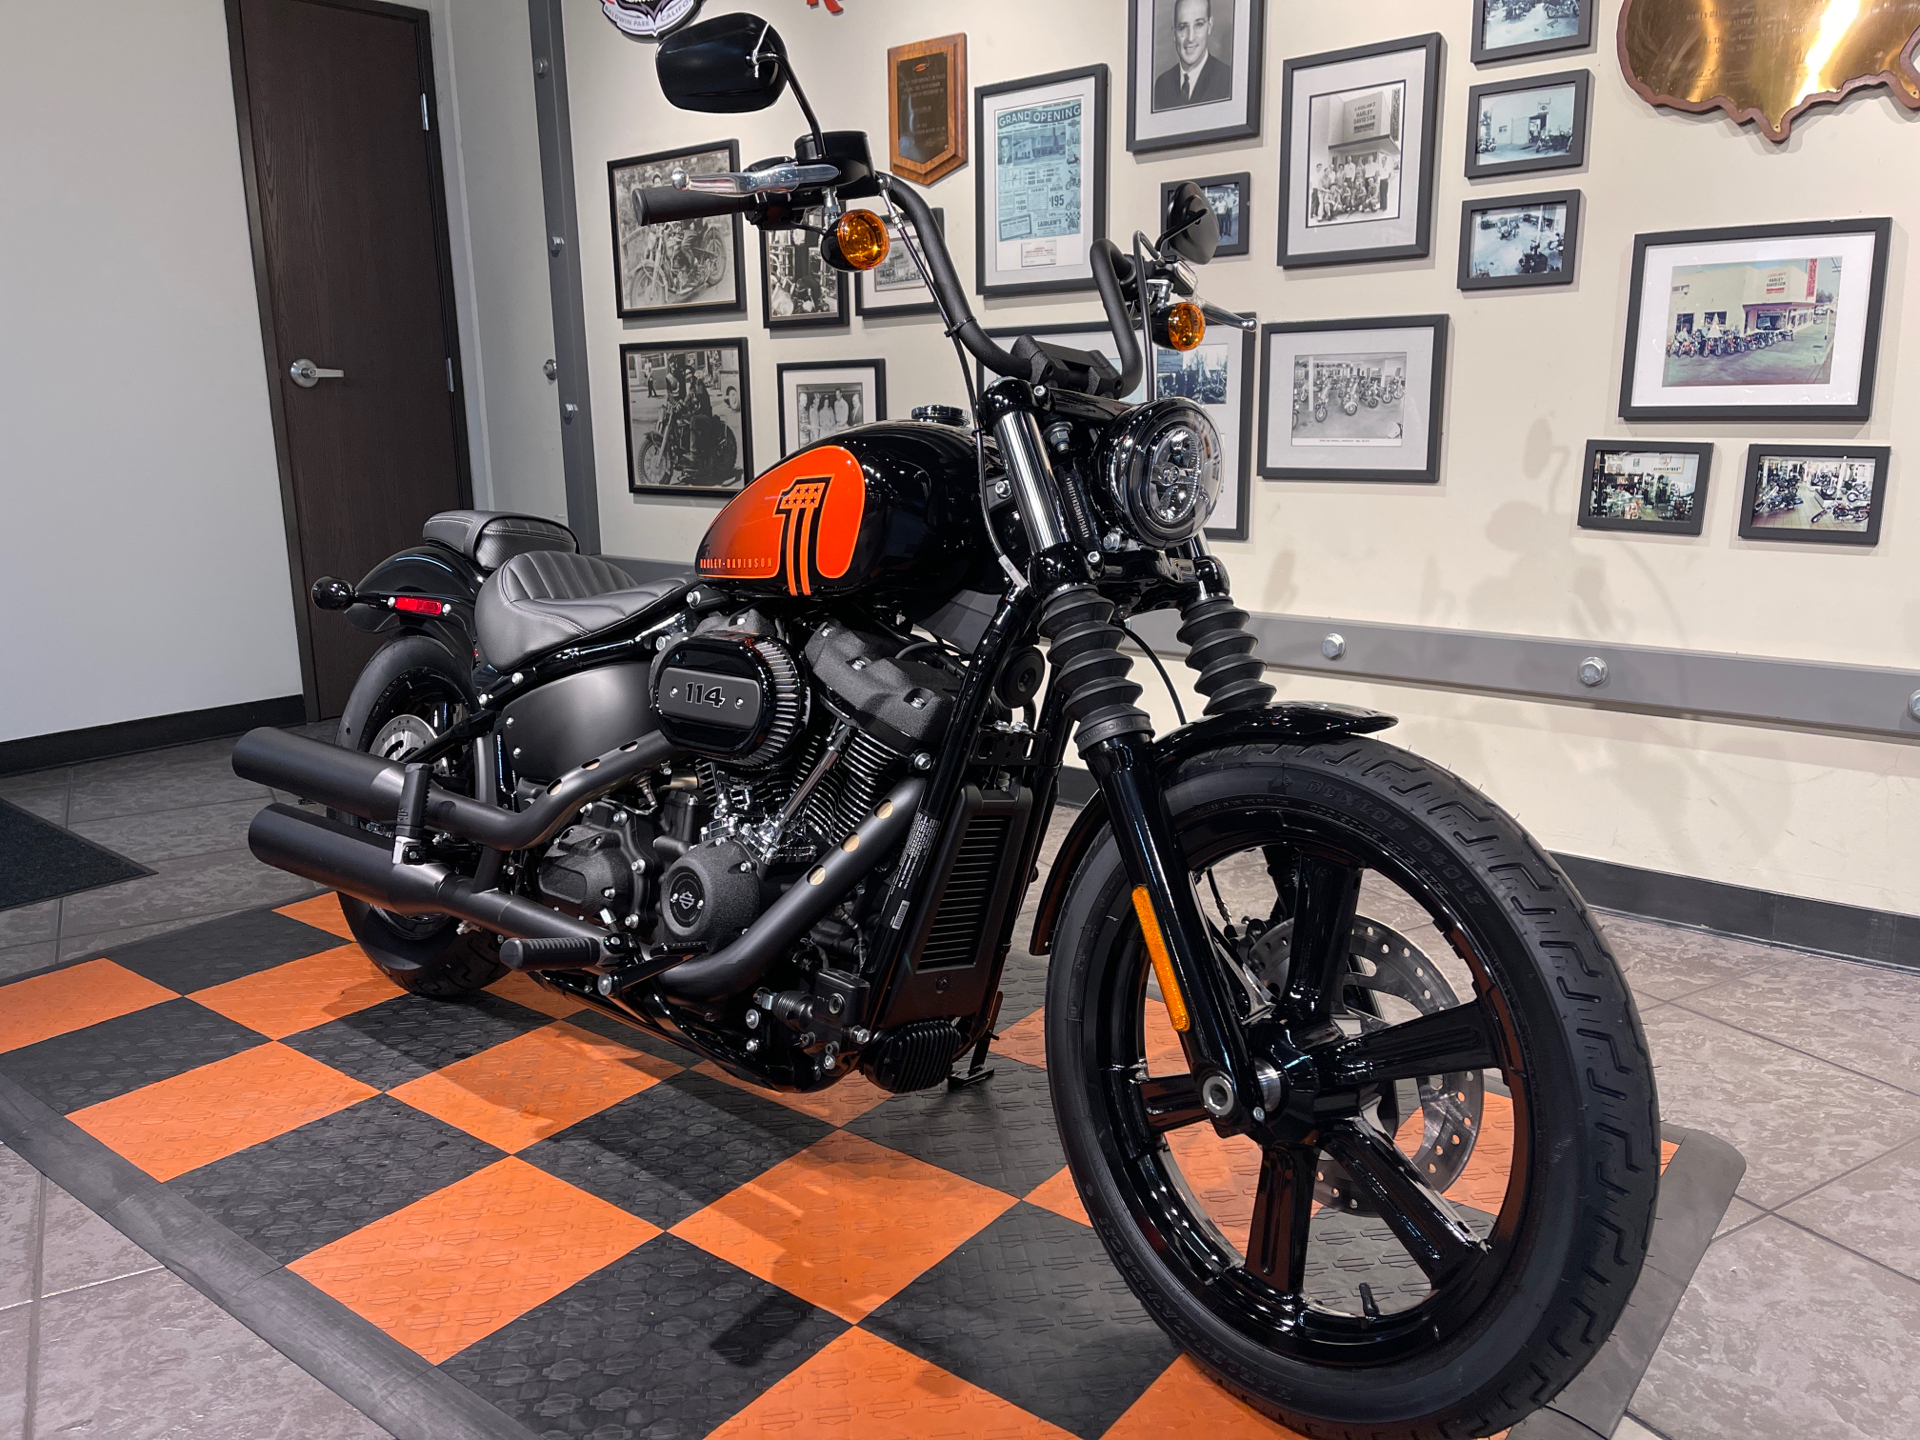 2022 Harley-Davidson Street Bob® 114 in Baldwin Park, California - Photo 2